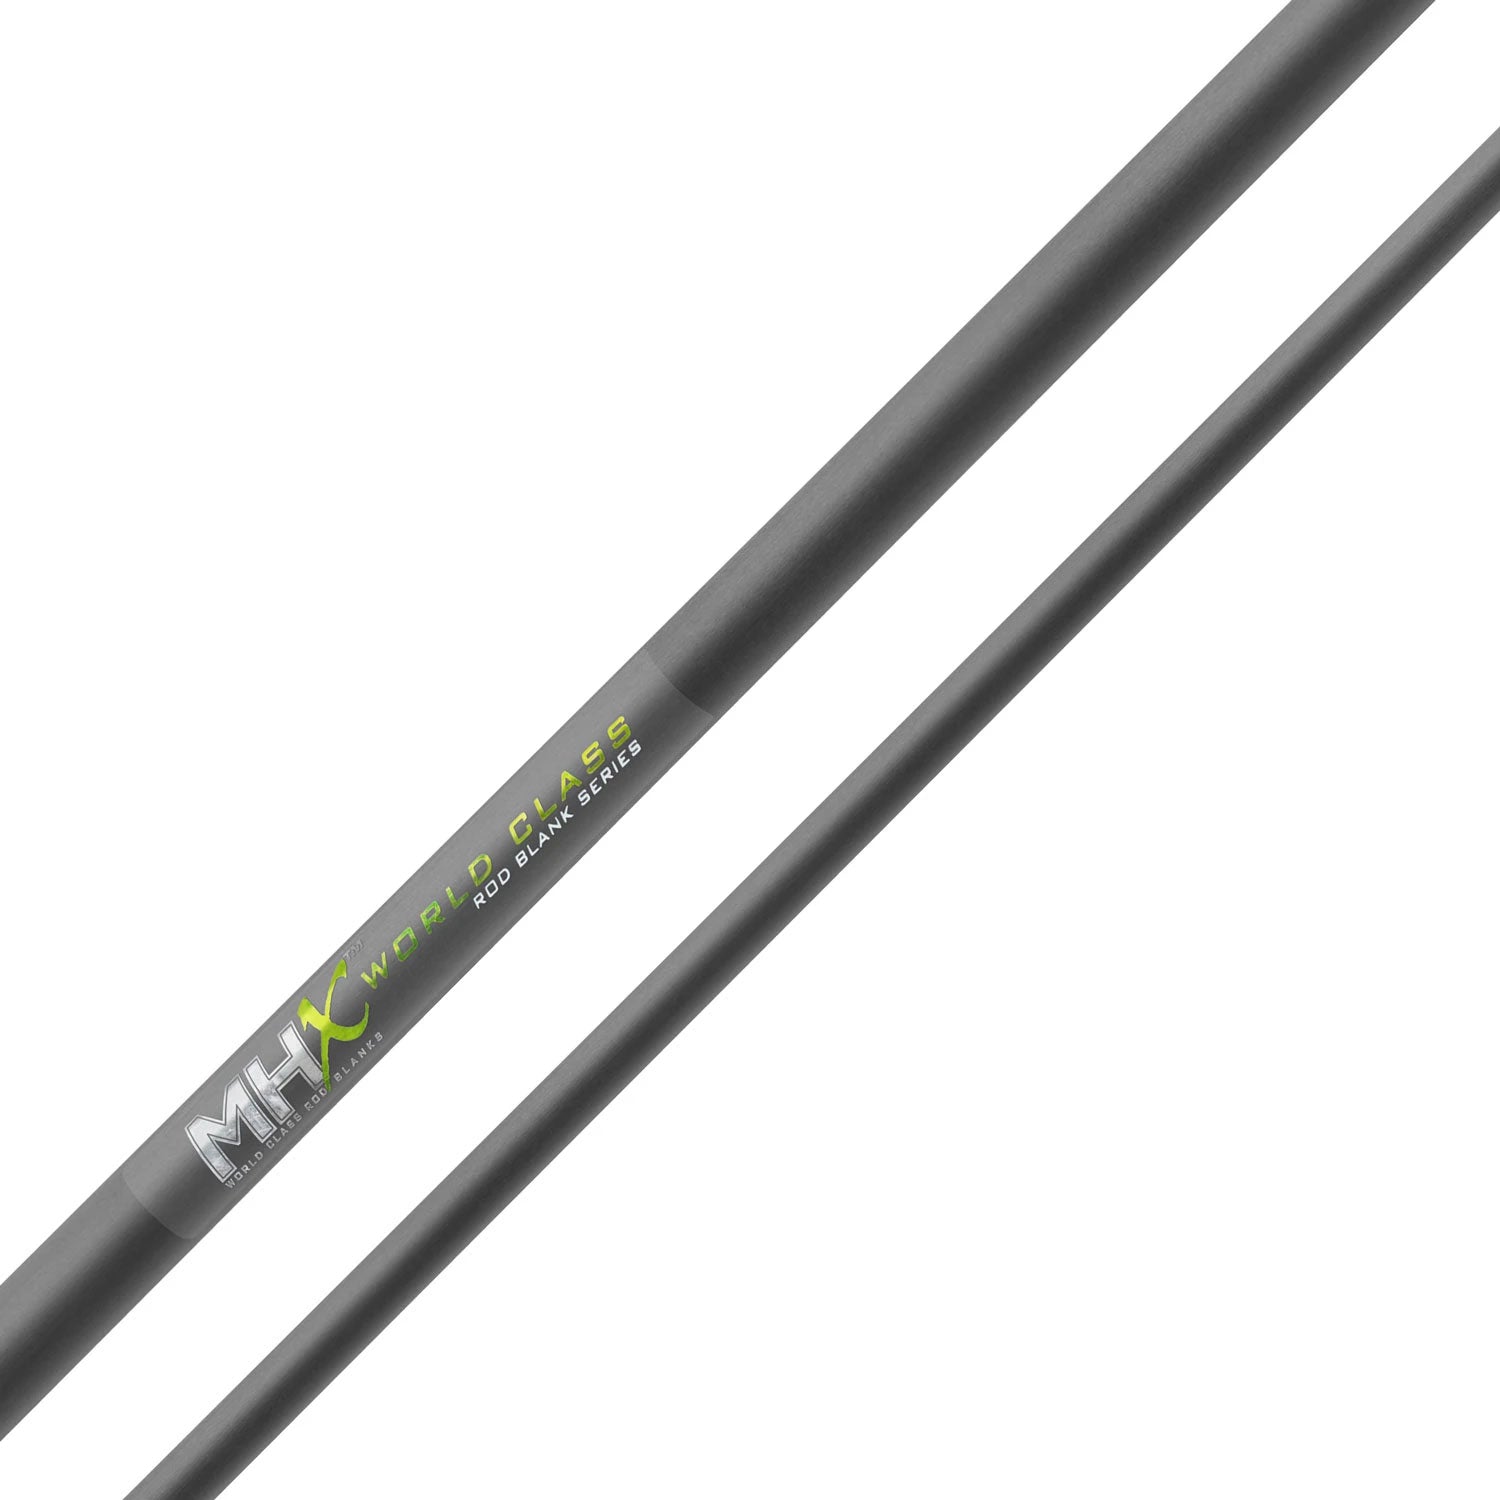 MHX 10'0" Medium Steelhead Rod Blank - ST1203-MHX